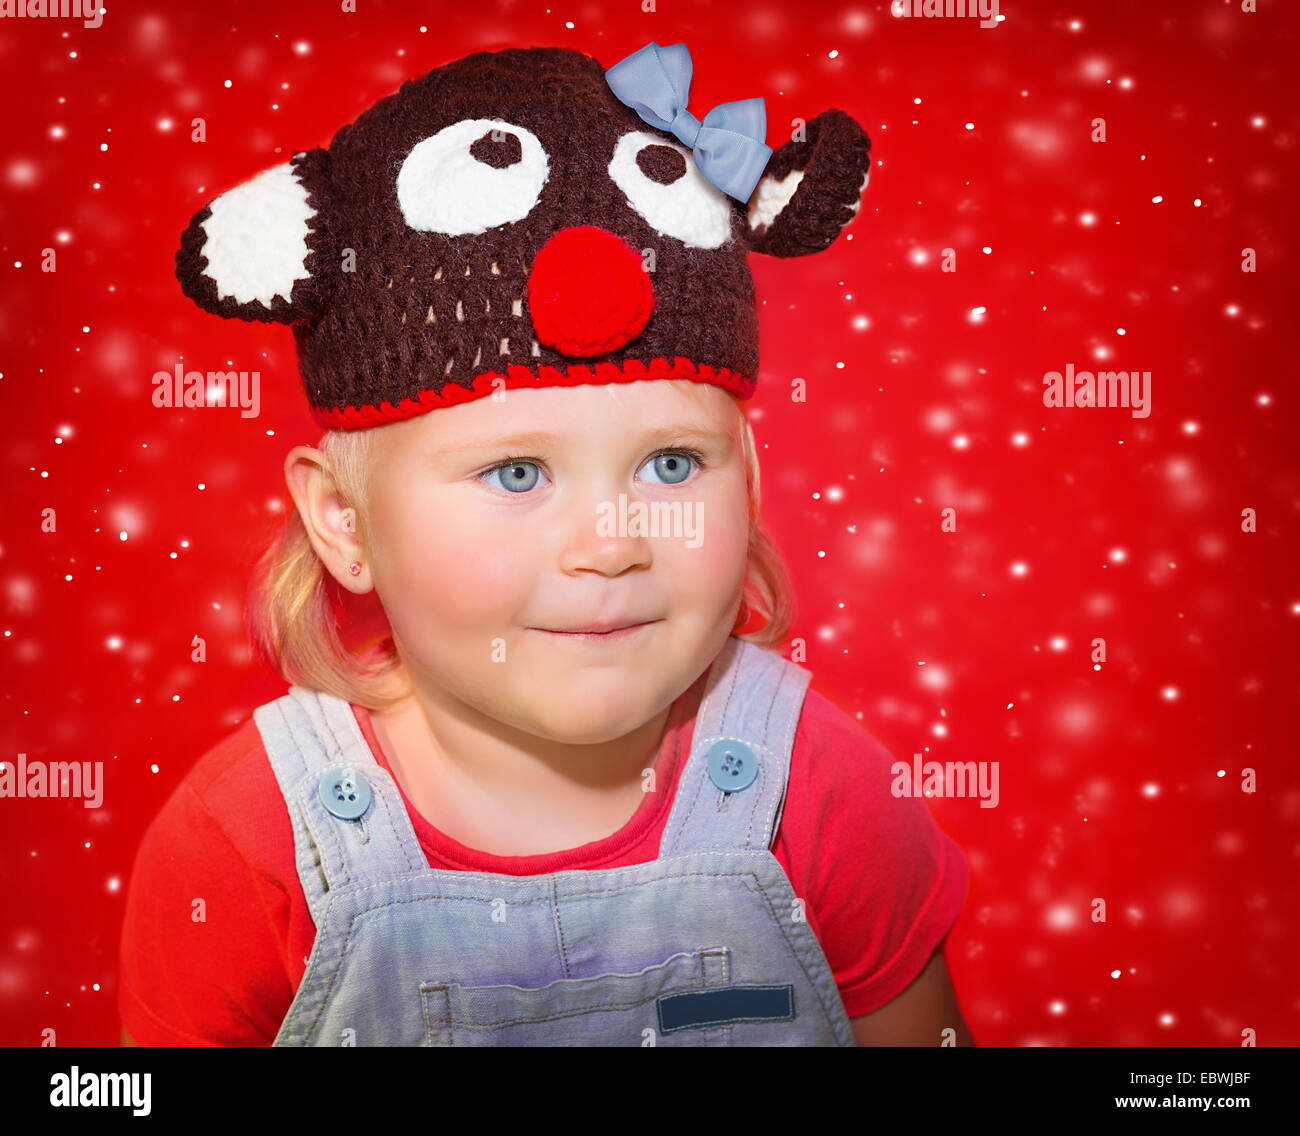 Closeup portrait of a little baby girl wearing hat Rudolph drôle sur fond de neige rouge, concept célébration de Noël Banque D'Images